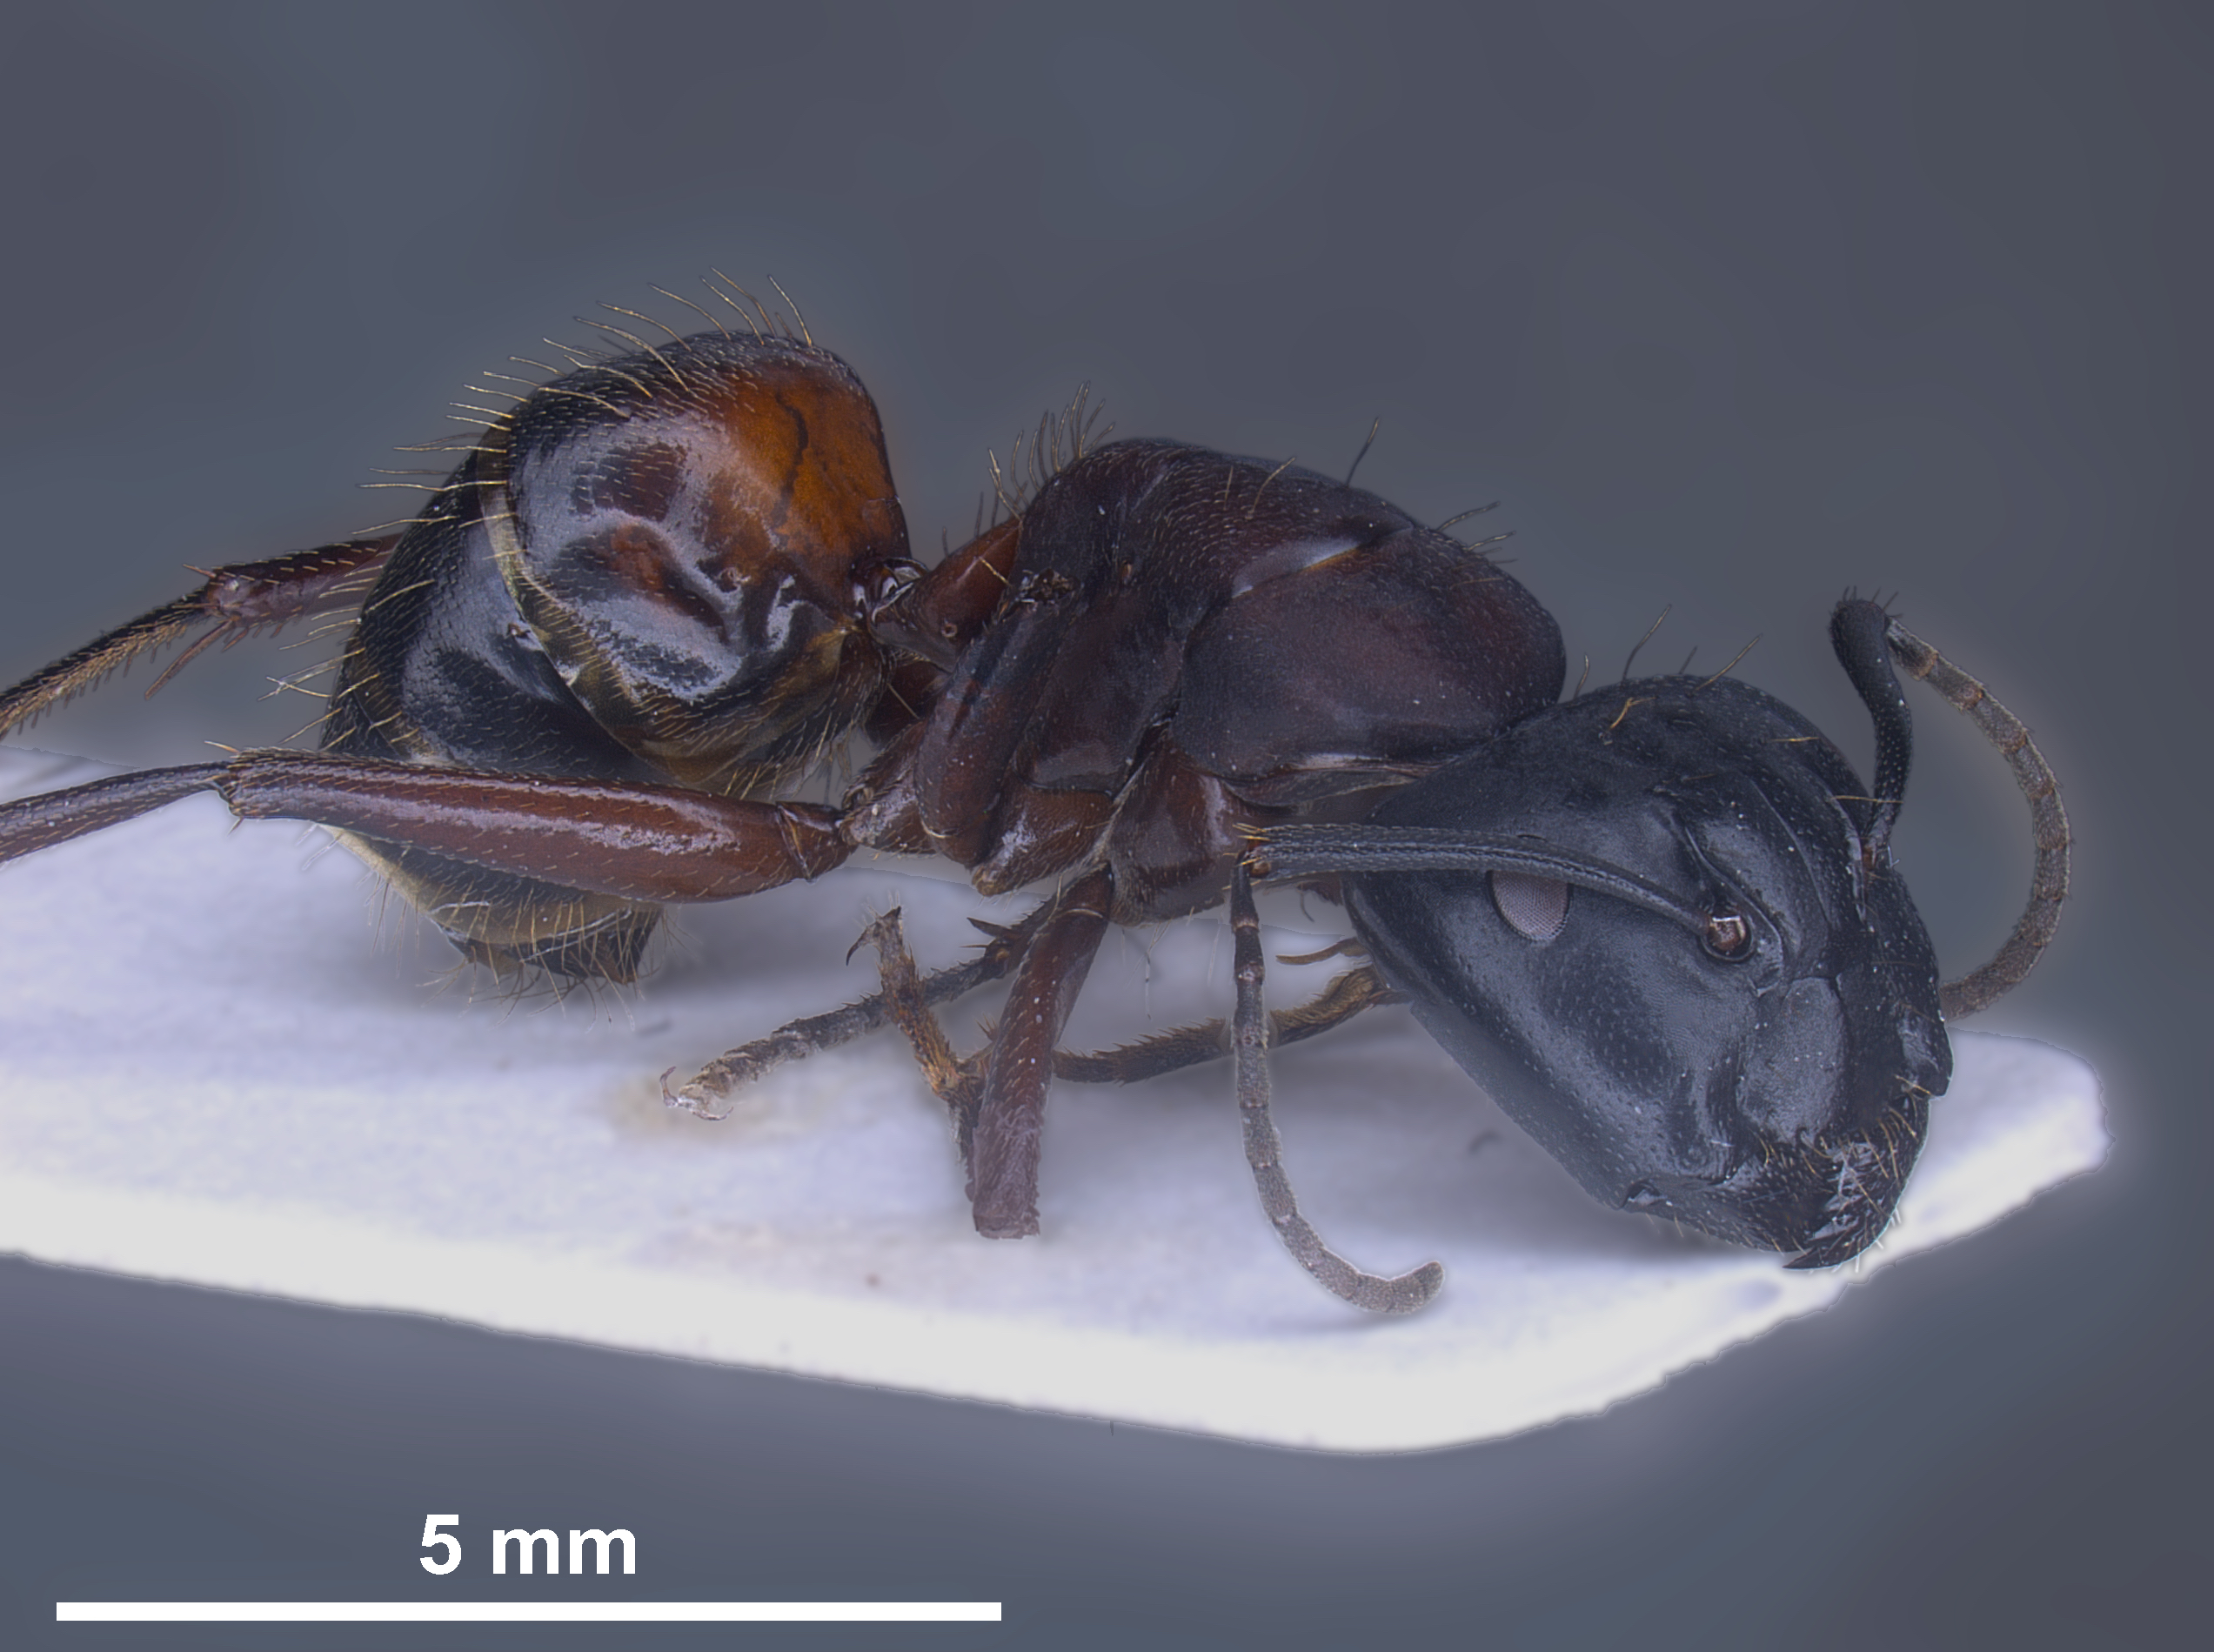 Hybrid worker Camponotus herculeanus × ligniperda